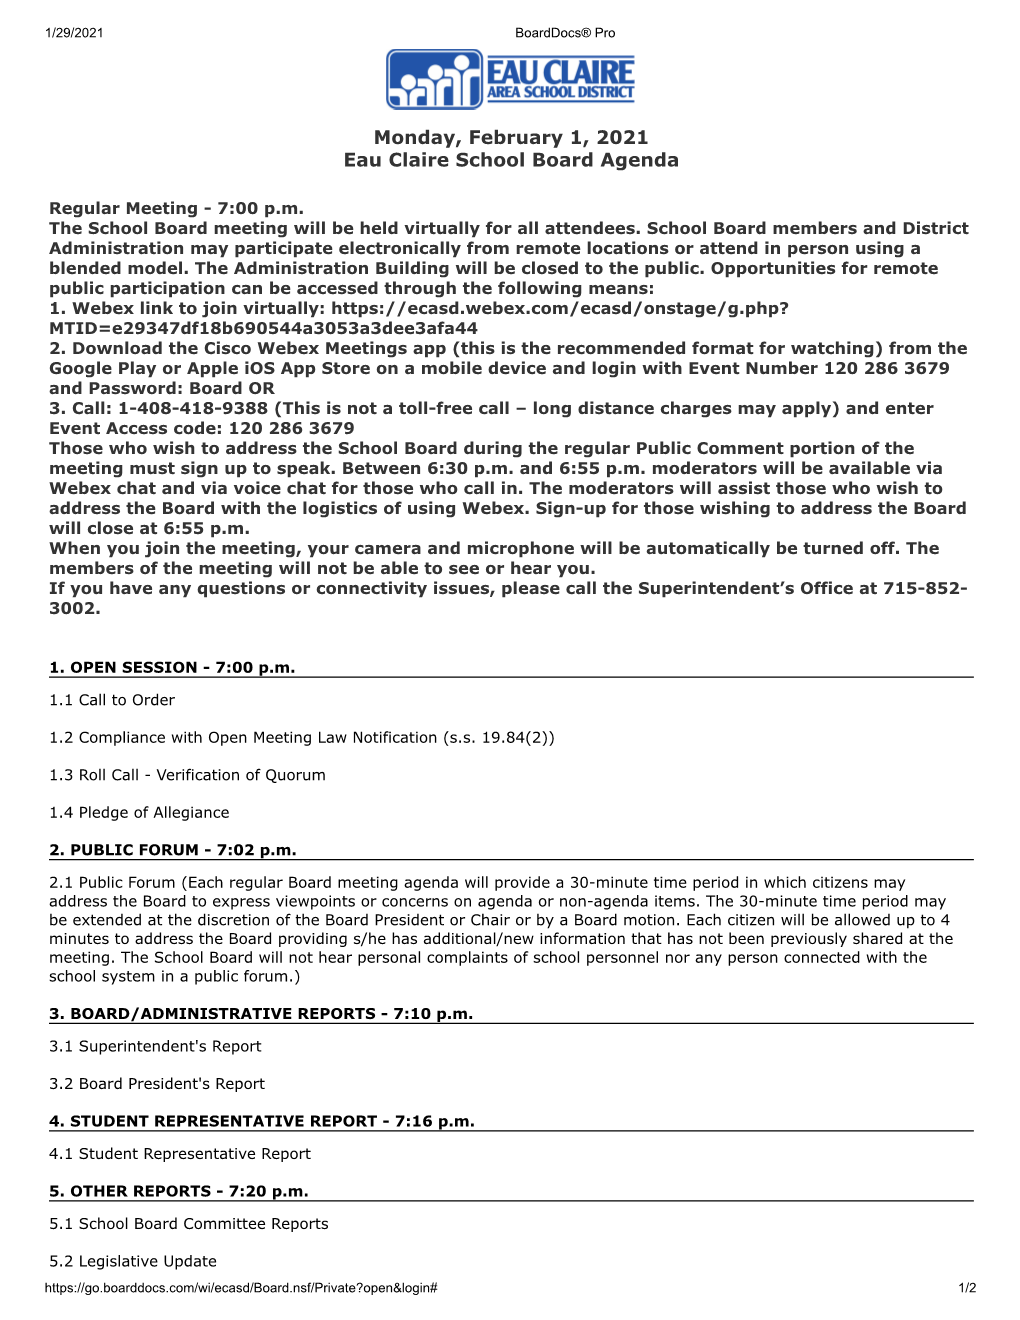 Monday, February 1, 2021 Eau Claire School Board Agenda